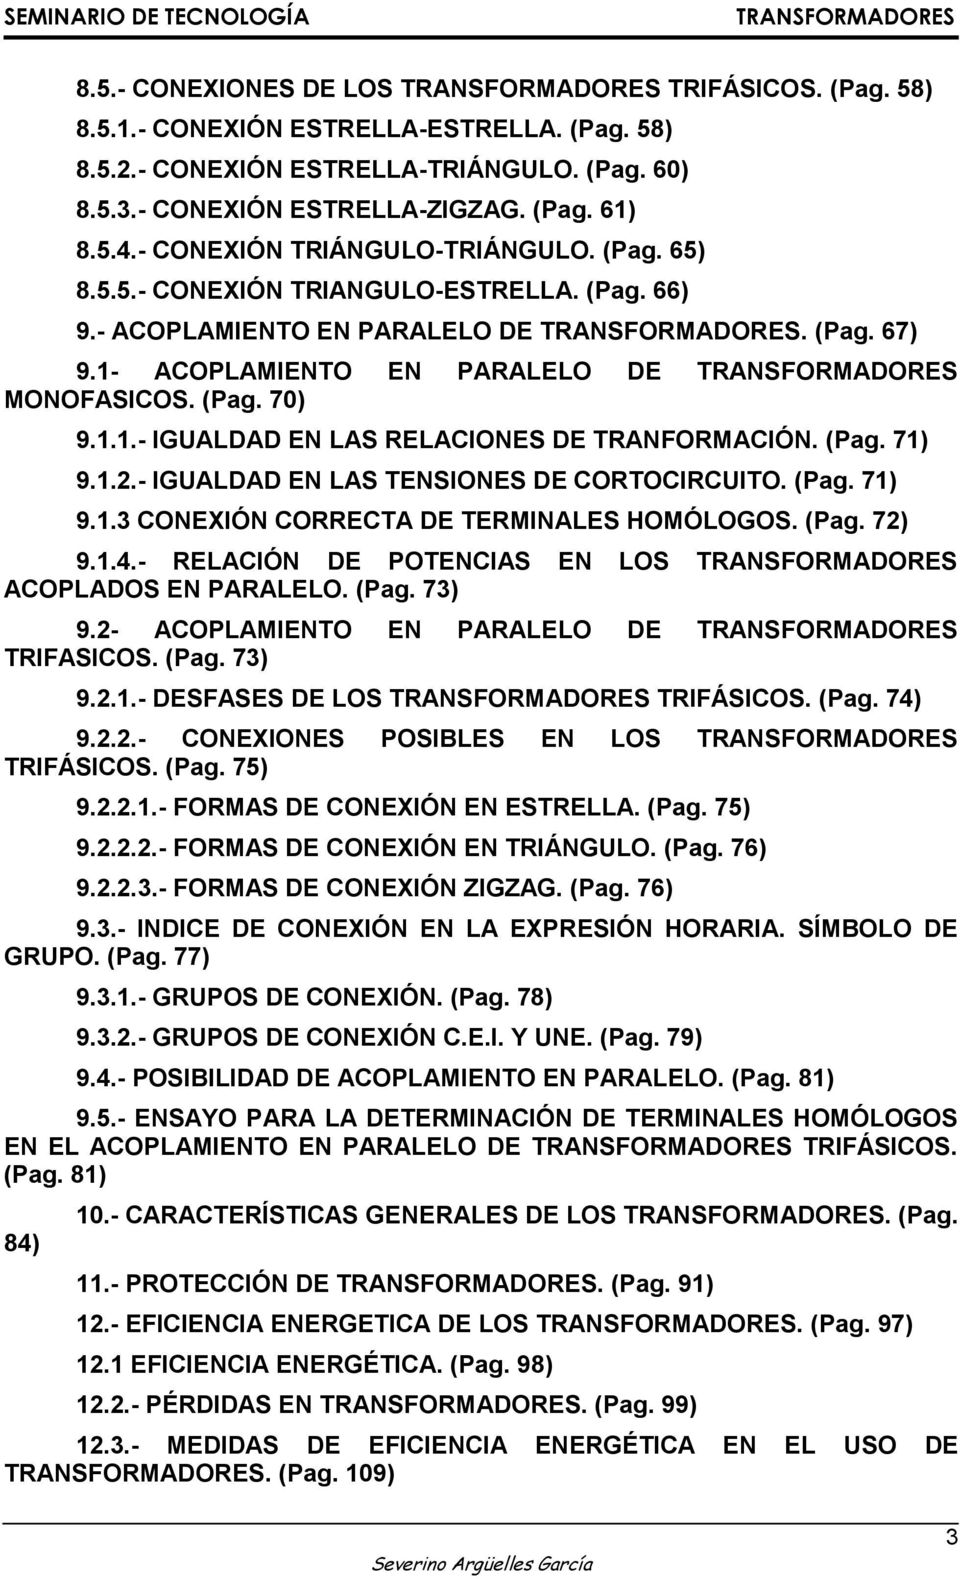 (Pag. 71) 9.1.2.- IGUALDAD EN LAS TENSIONES DE CORTOCIRCUITO. (Pag. 71) 9.1.3 CONEXIÓN CORRECTA DE TERMINALES HOMÓLOGOS. (Pag. 72) 9.1.4.- RELACIÓN DE POTENCIAS EN LOS ACOPLADOS EN PARALELO. (Pag. 73) 9.